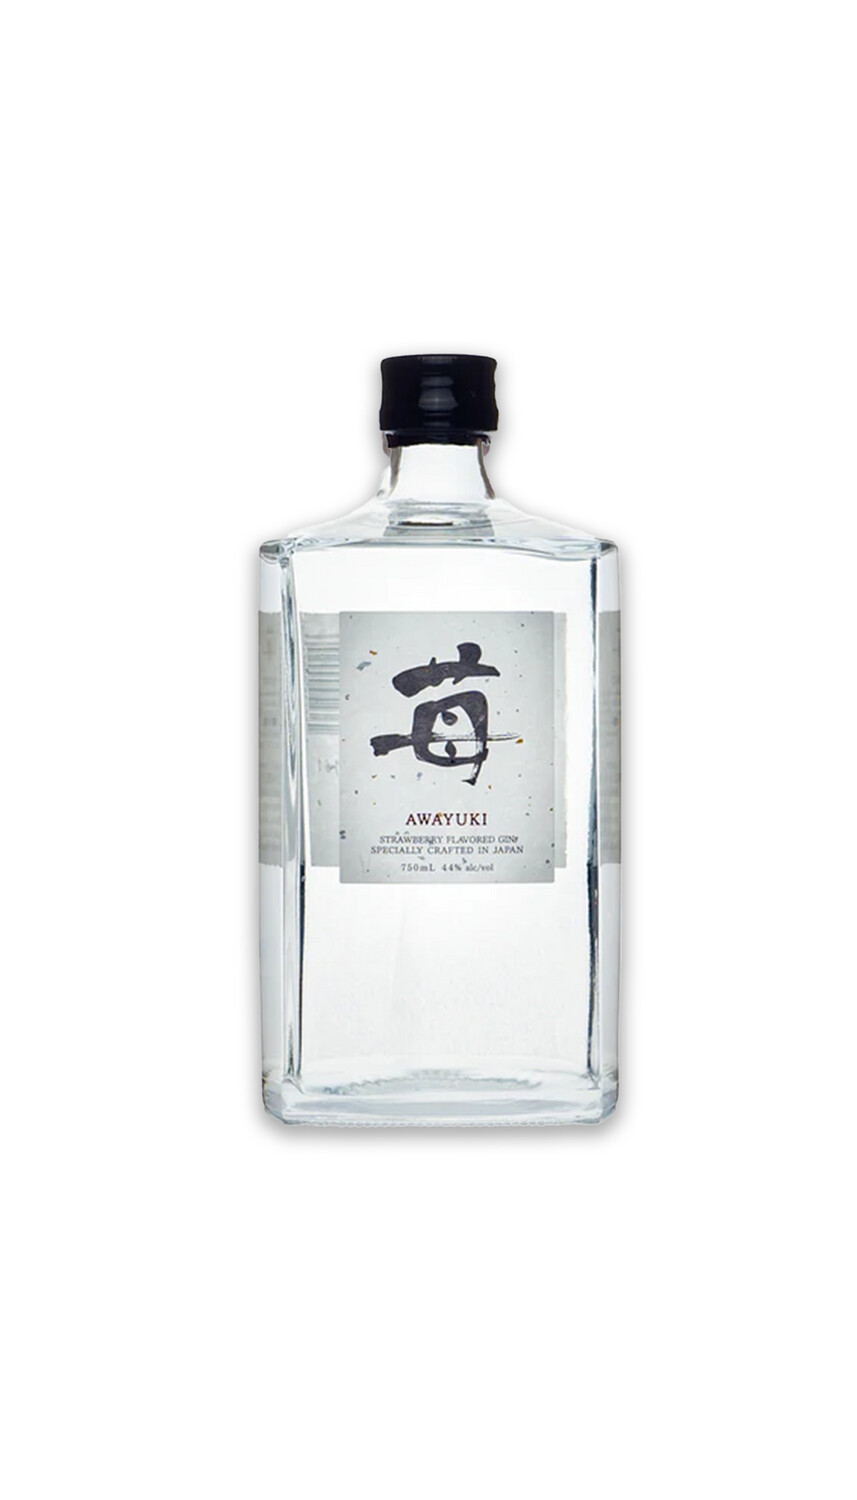 Awayuki japanese gin